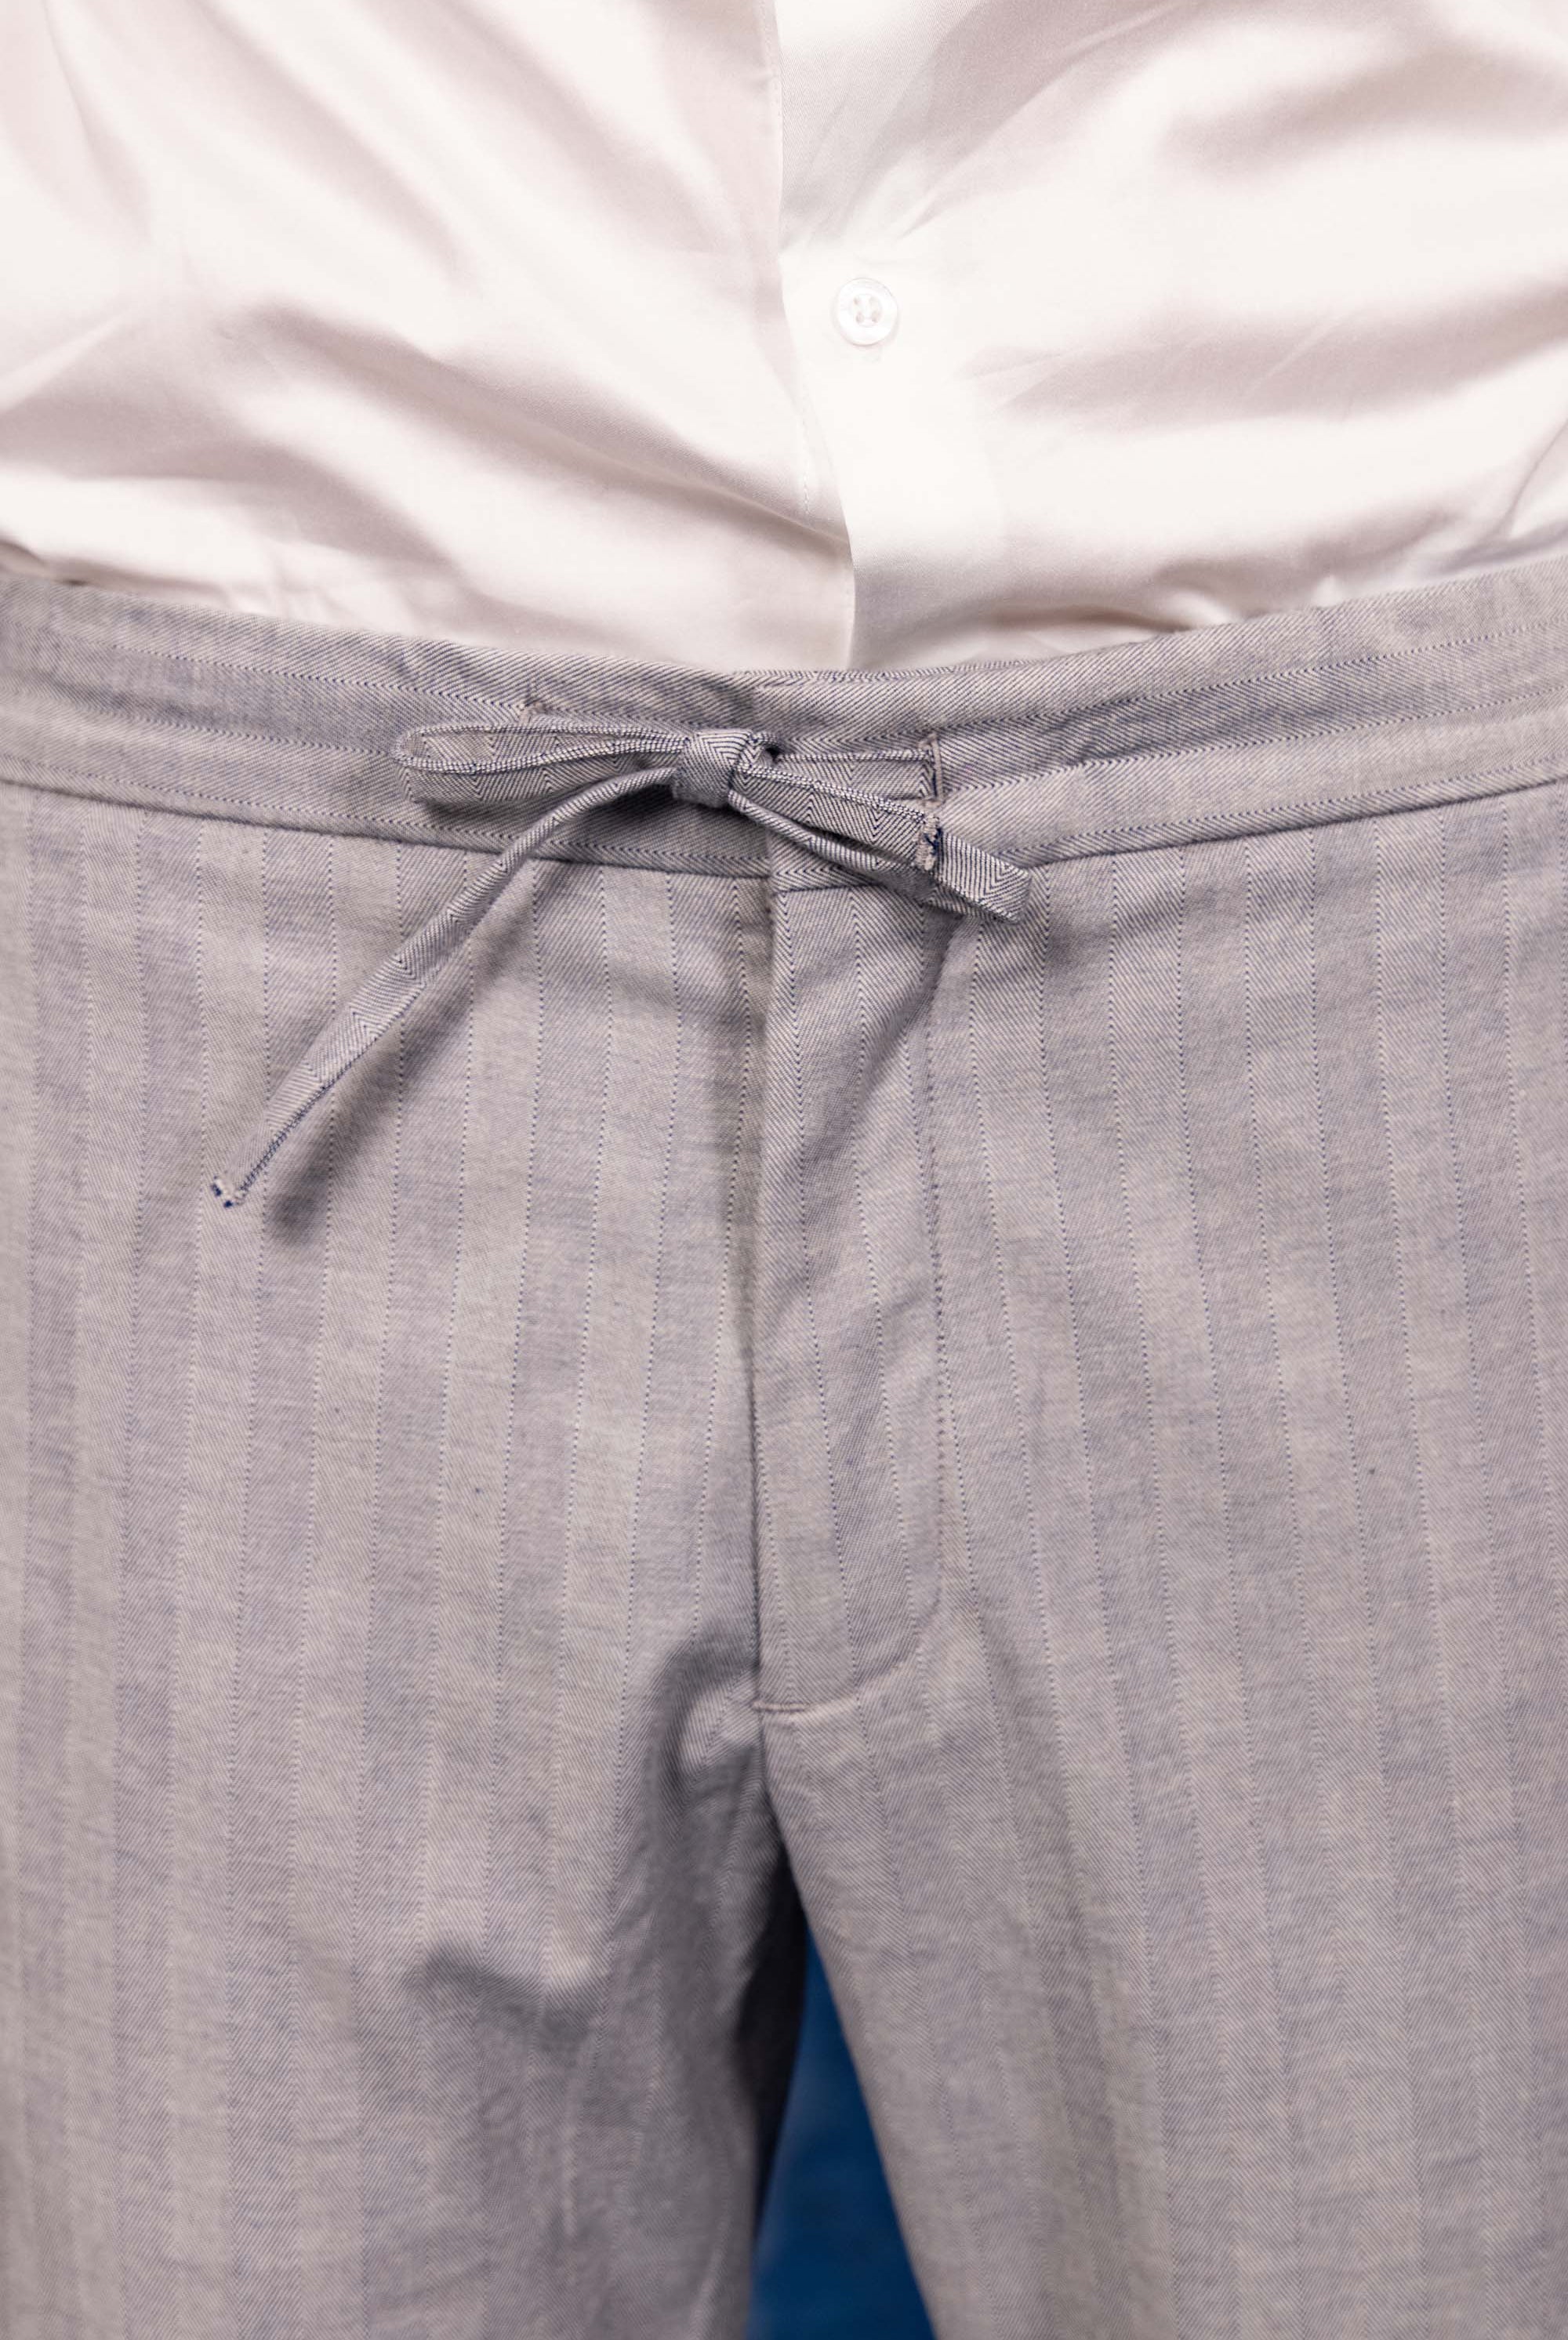 Pantalon Parejo Bleu Clair coupe aisée et facile à porter, indispensable à la garde-robe masculine